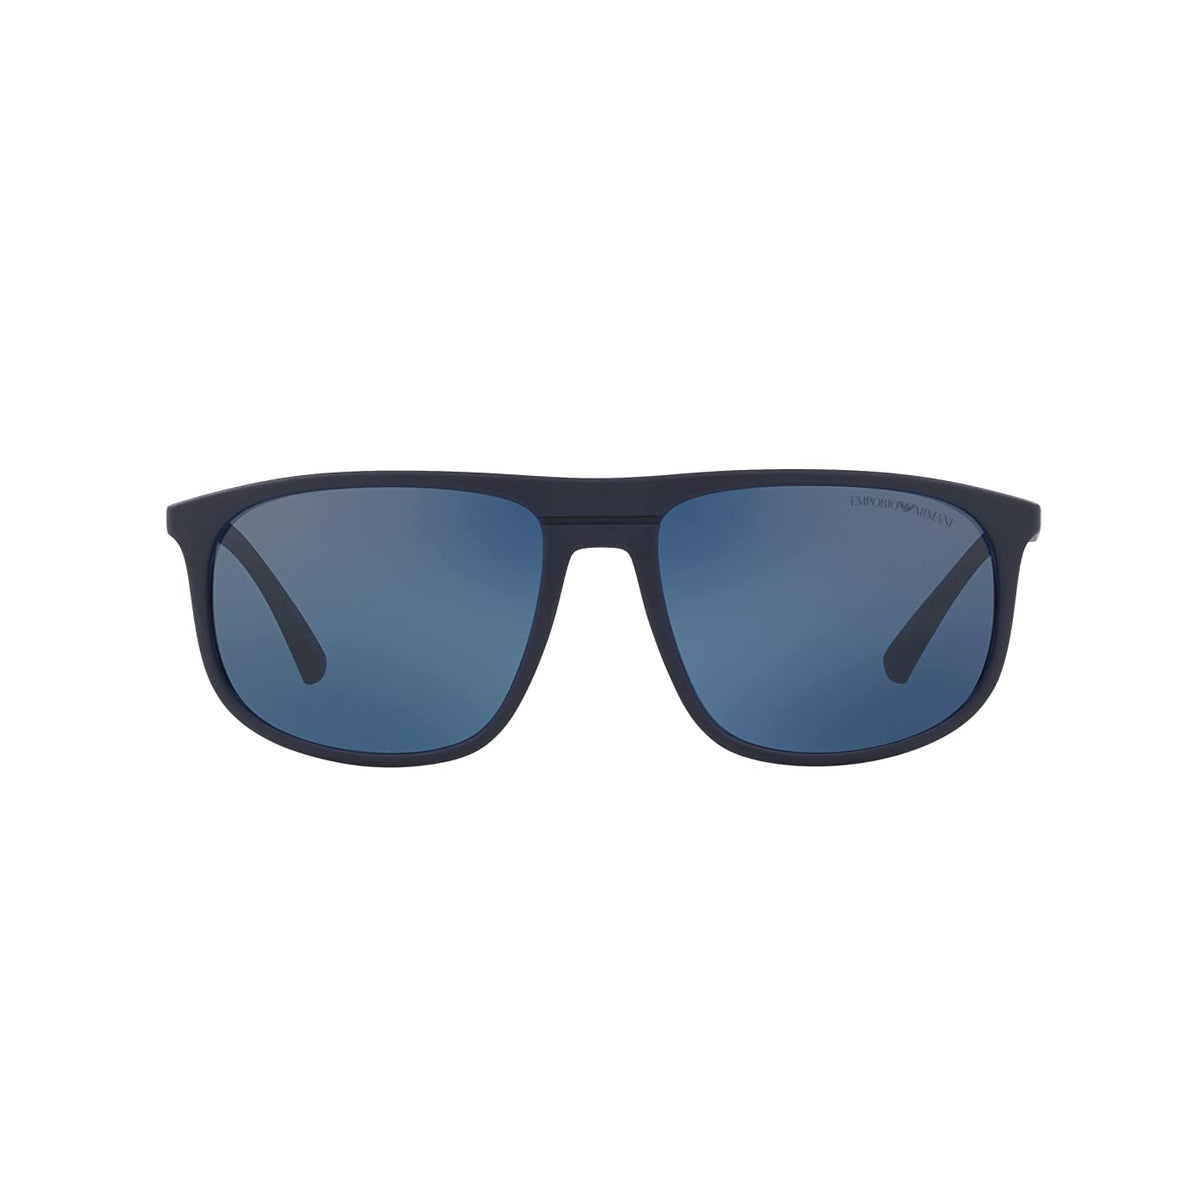 Sunglasses Emporio Armani EA 4133 (575287)